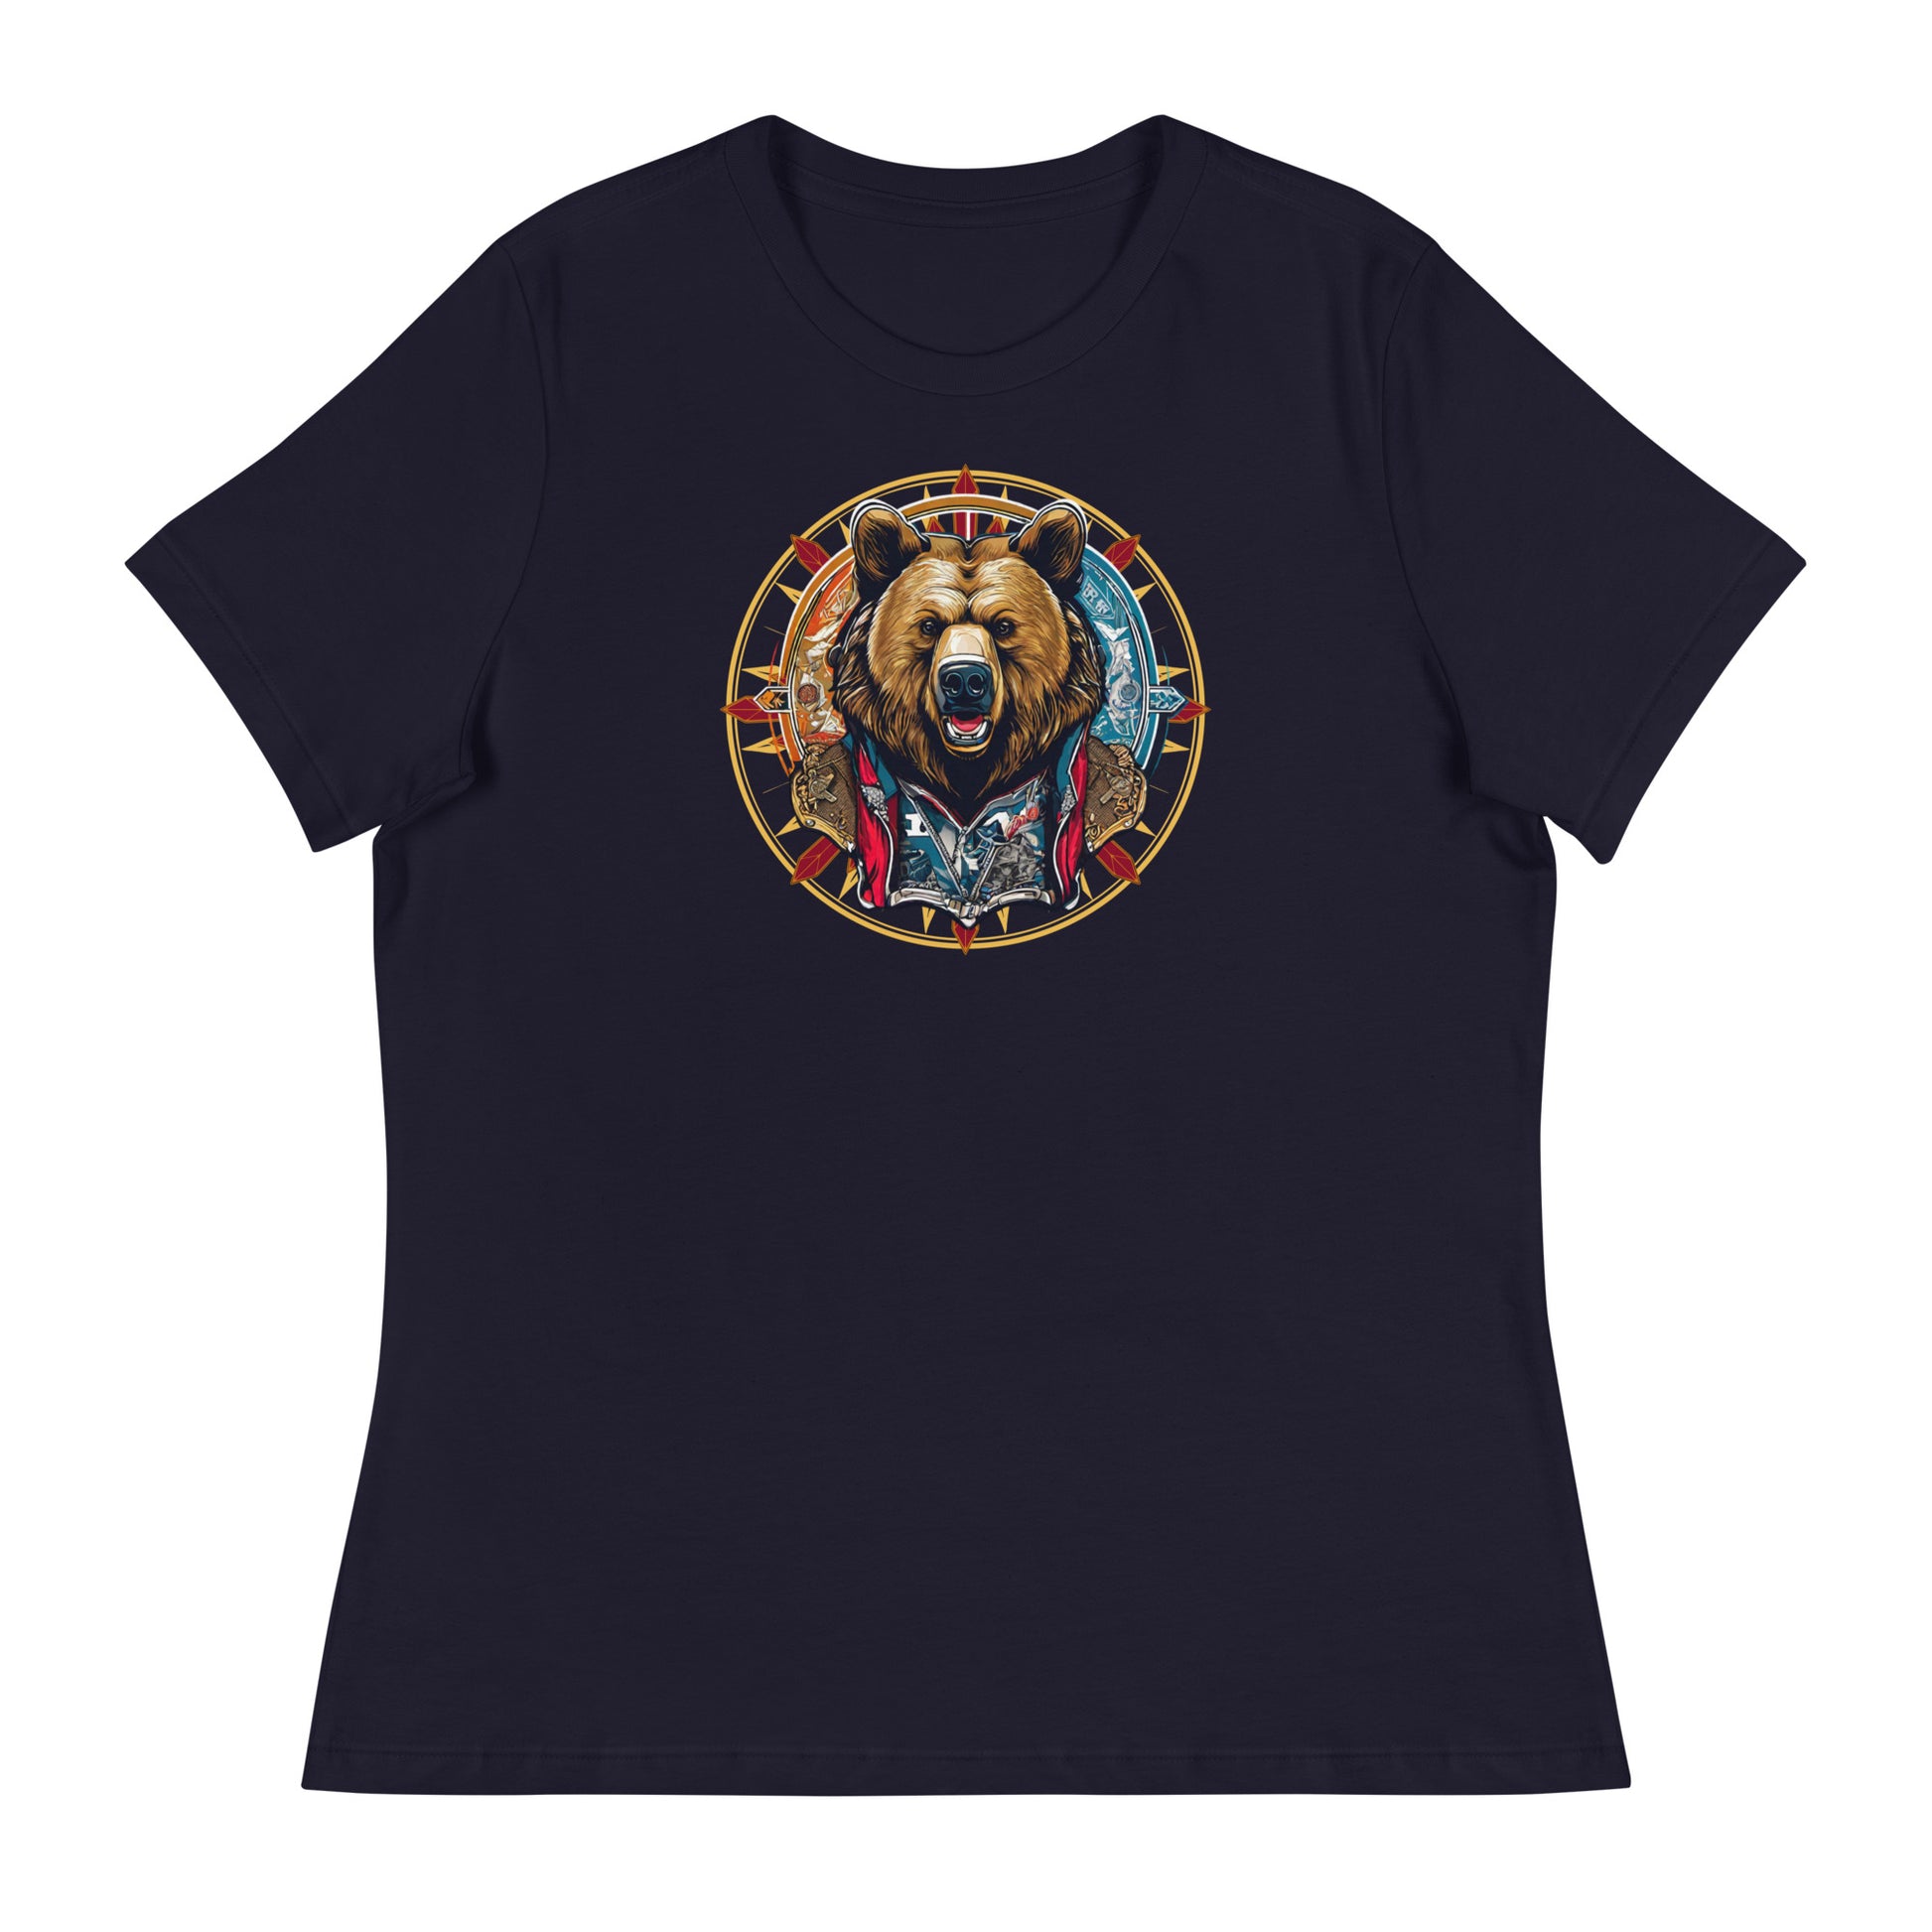 Bear Emblem Women's Graphic T-Shirt Navy